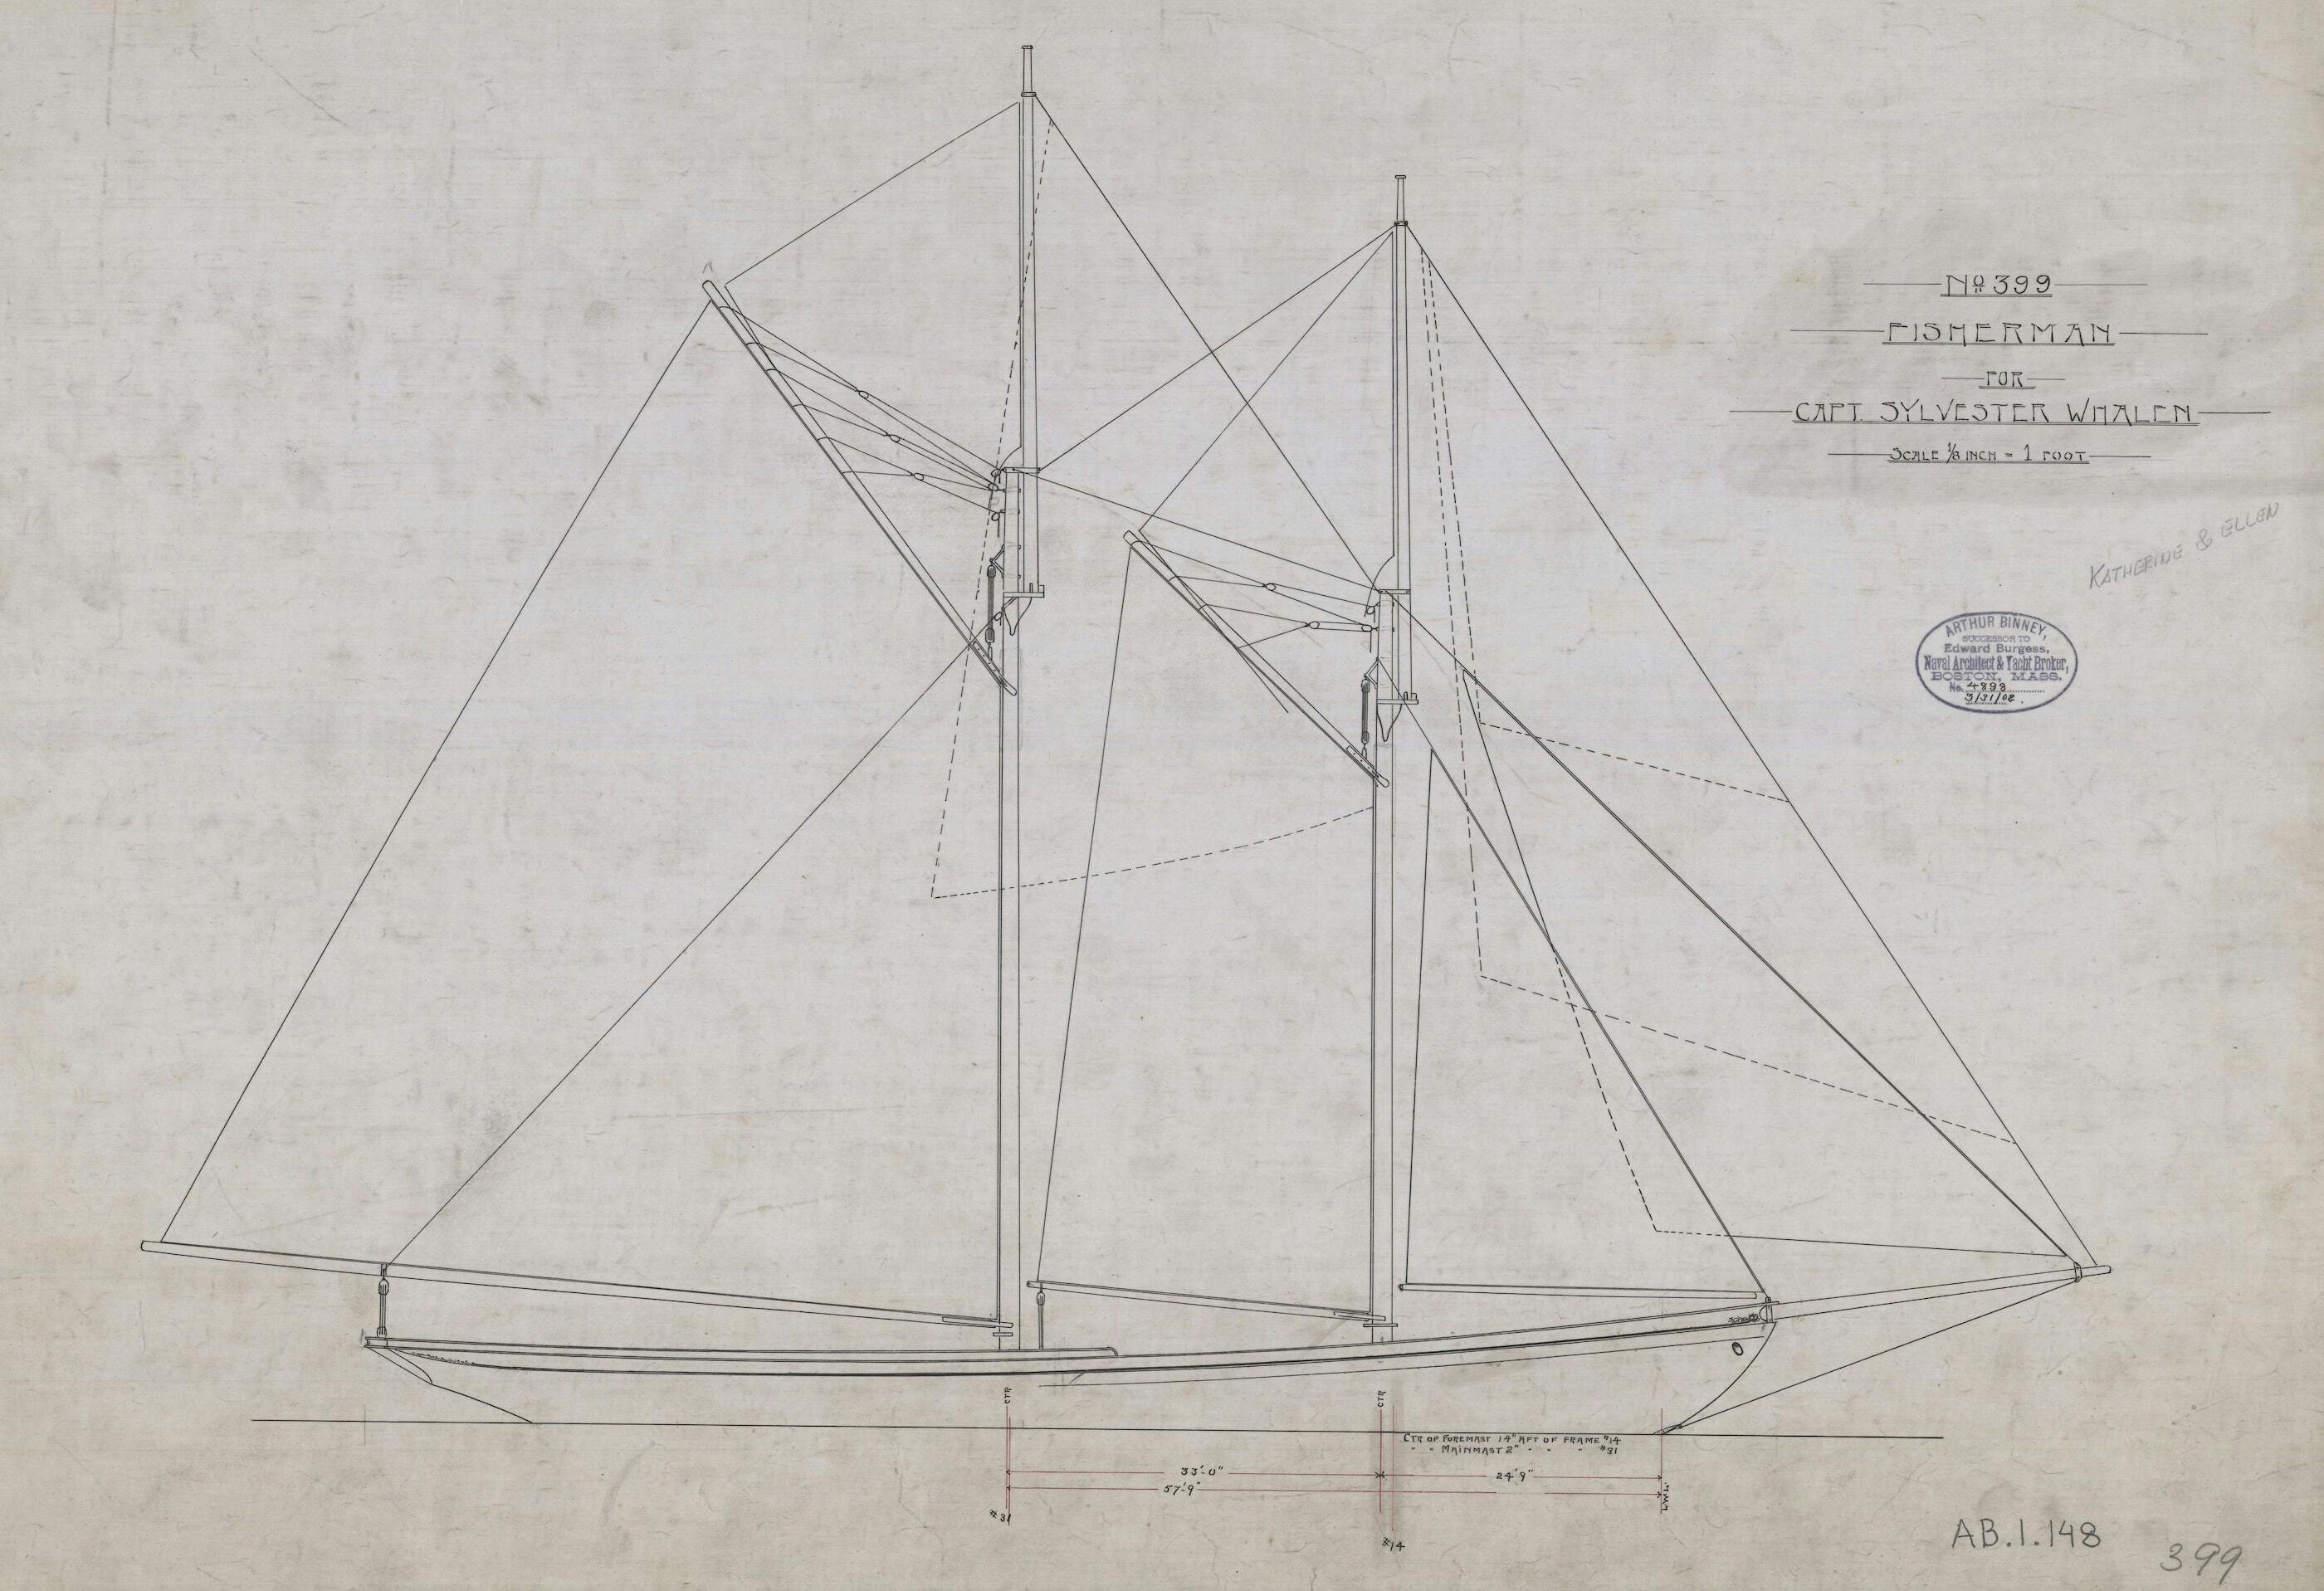 sail plan of Katherine, gaff fishing schooner No. 399 for Capt Sylvester Whalen